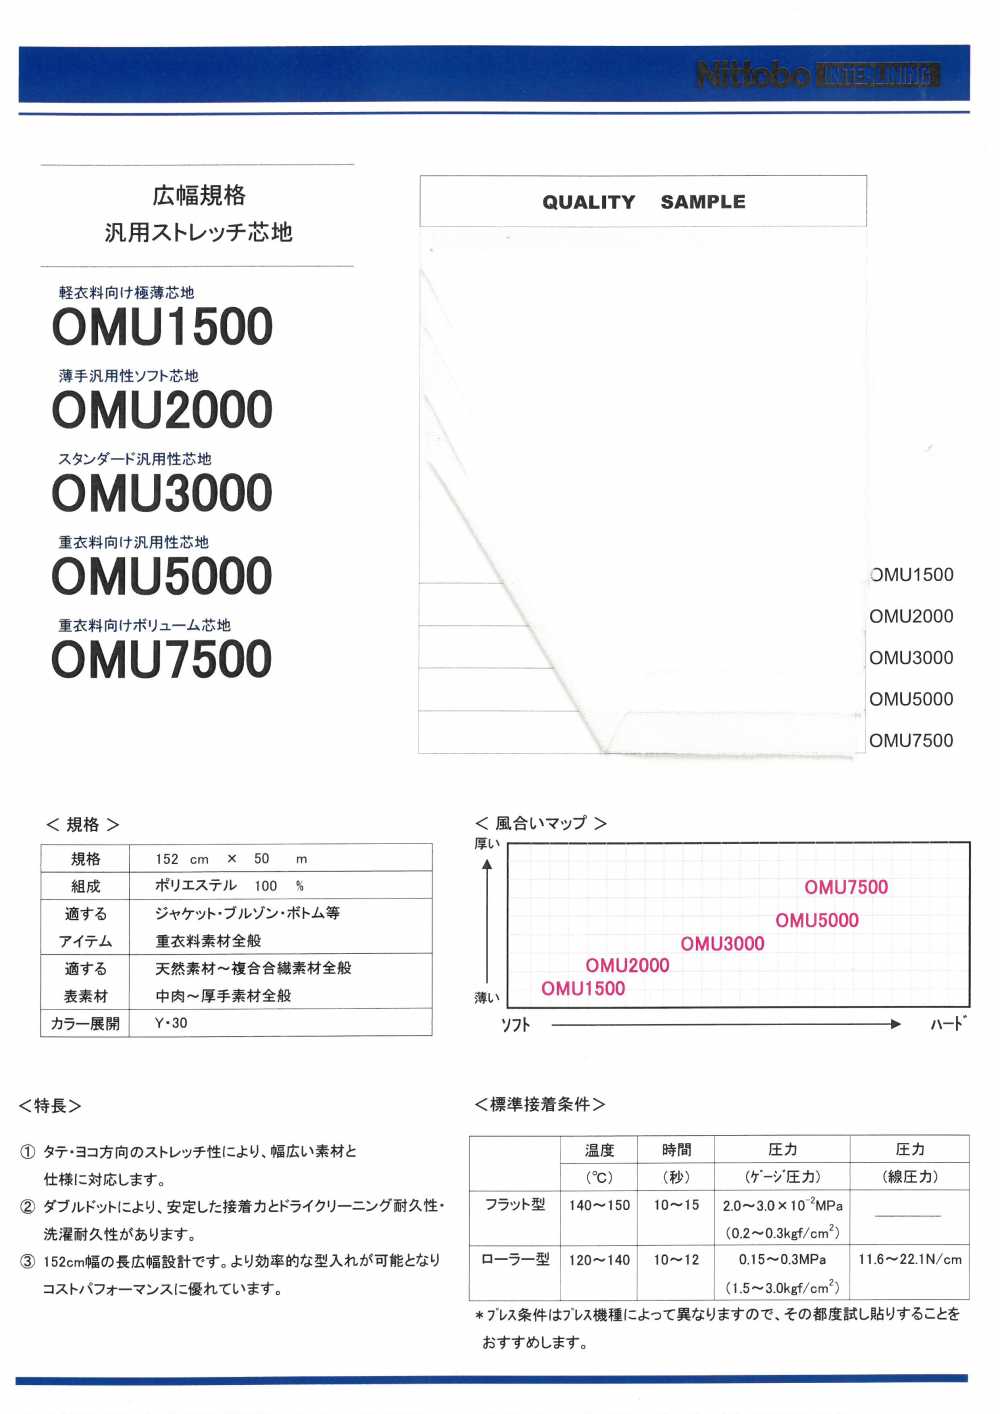 OMU2000 얇은 범용성 소프트 심지 닛토보 (닛토보인터라이닝)